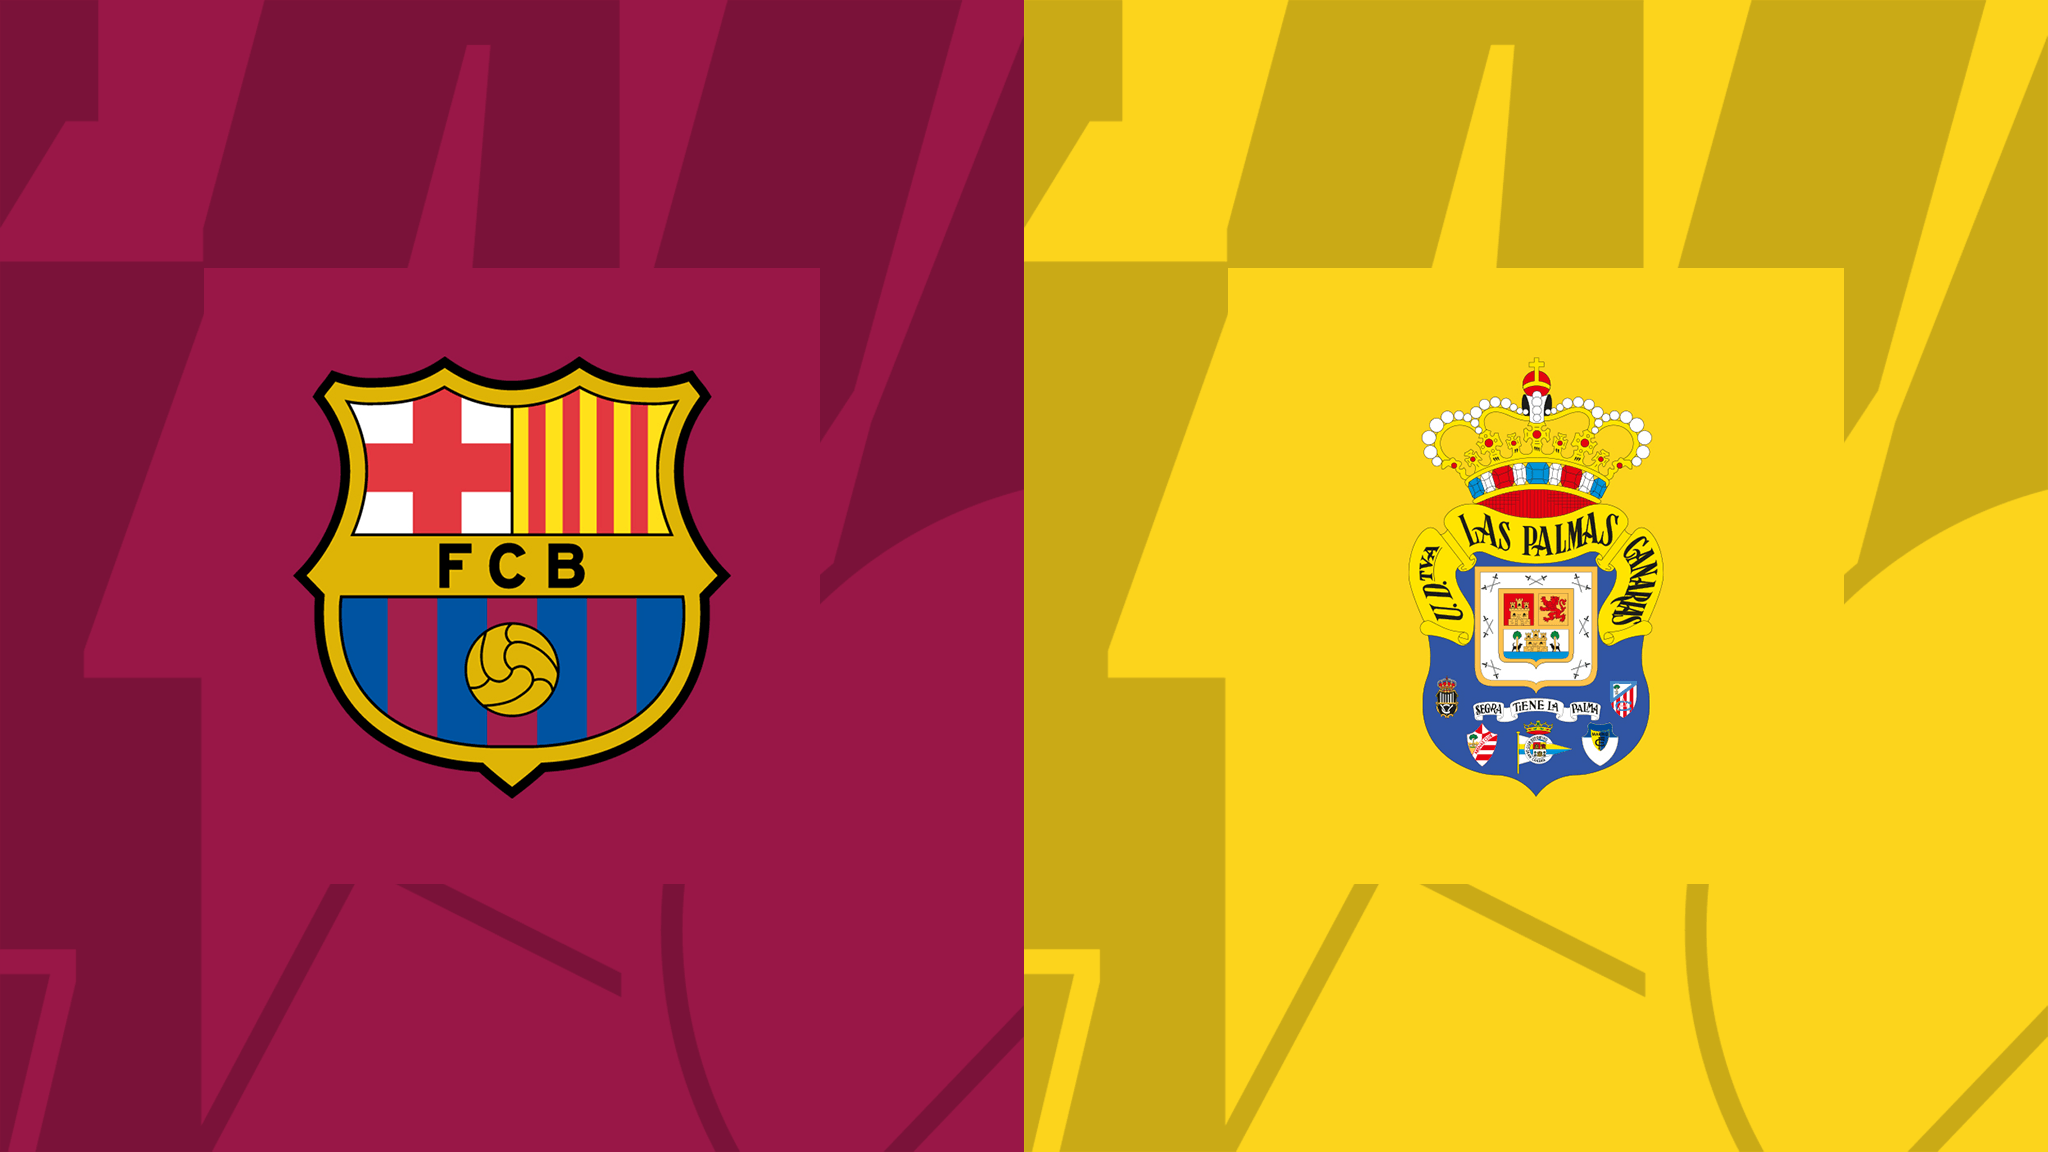 FC Barcelona, Las Palmas